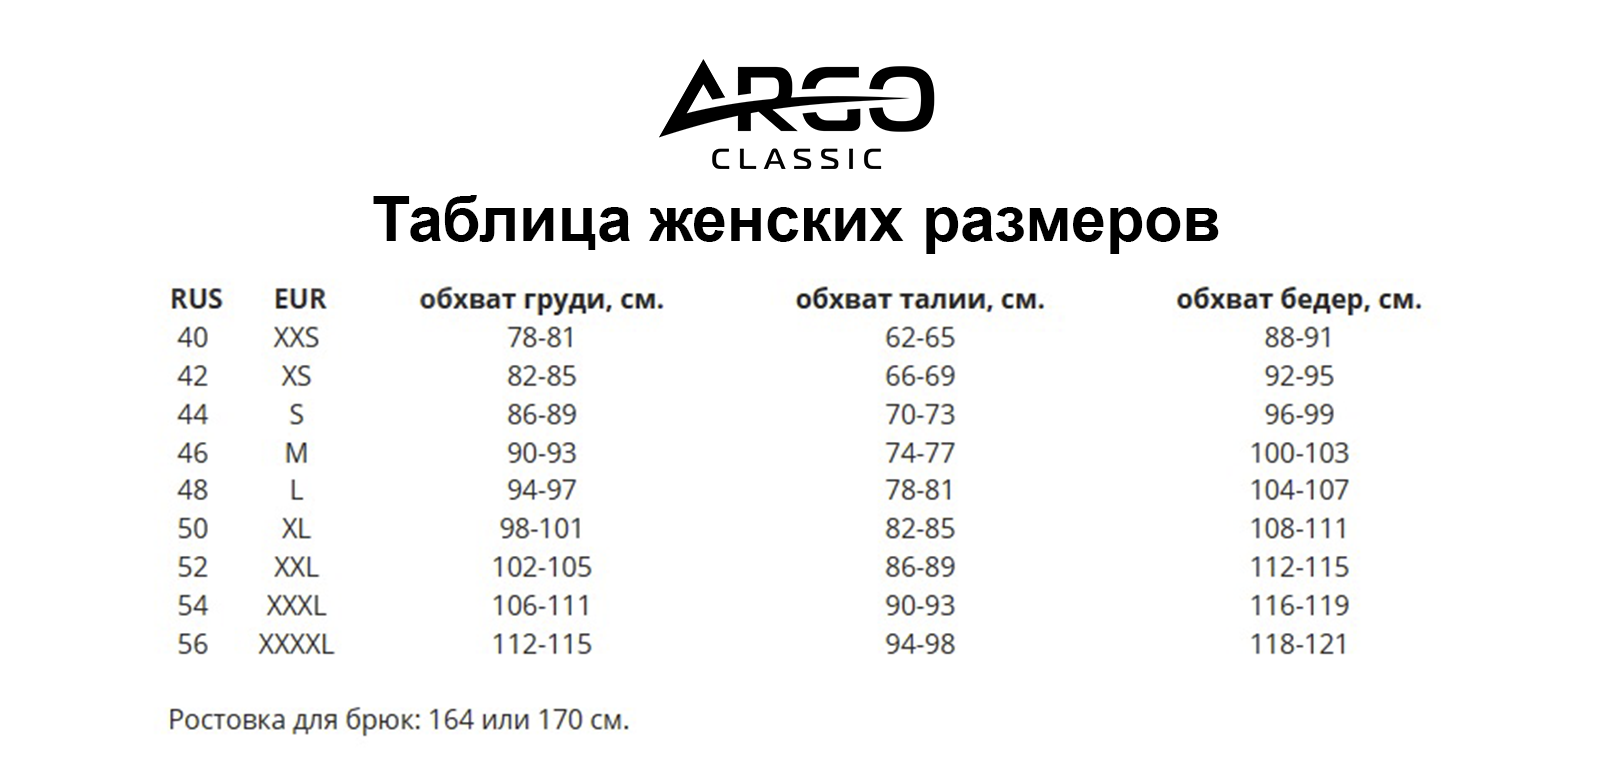 Футболка женская Argo Classic Top 625 розовая 44 RU